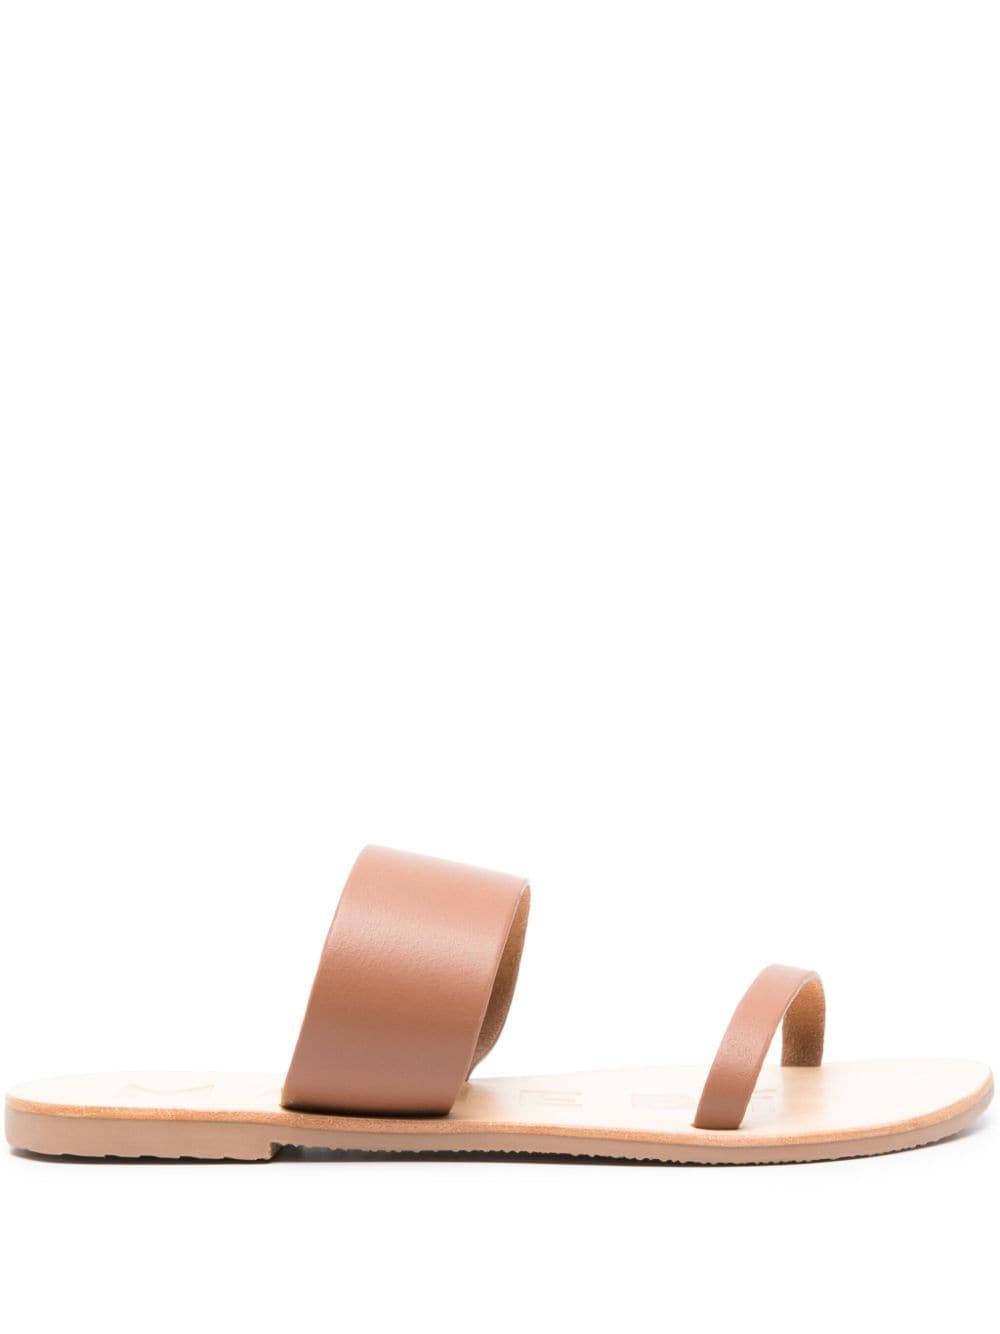 Manebi slip-on leather sandals - Brown von Manebi